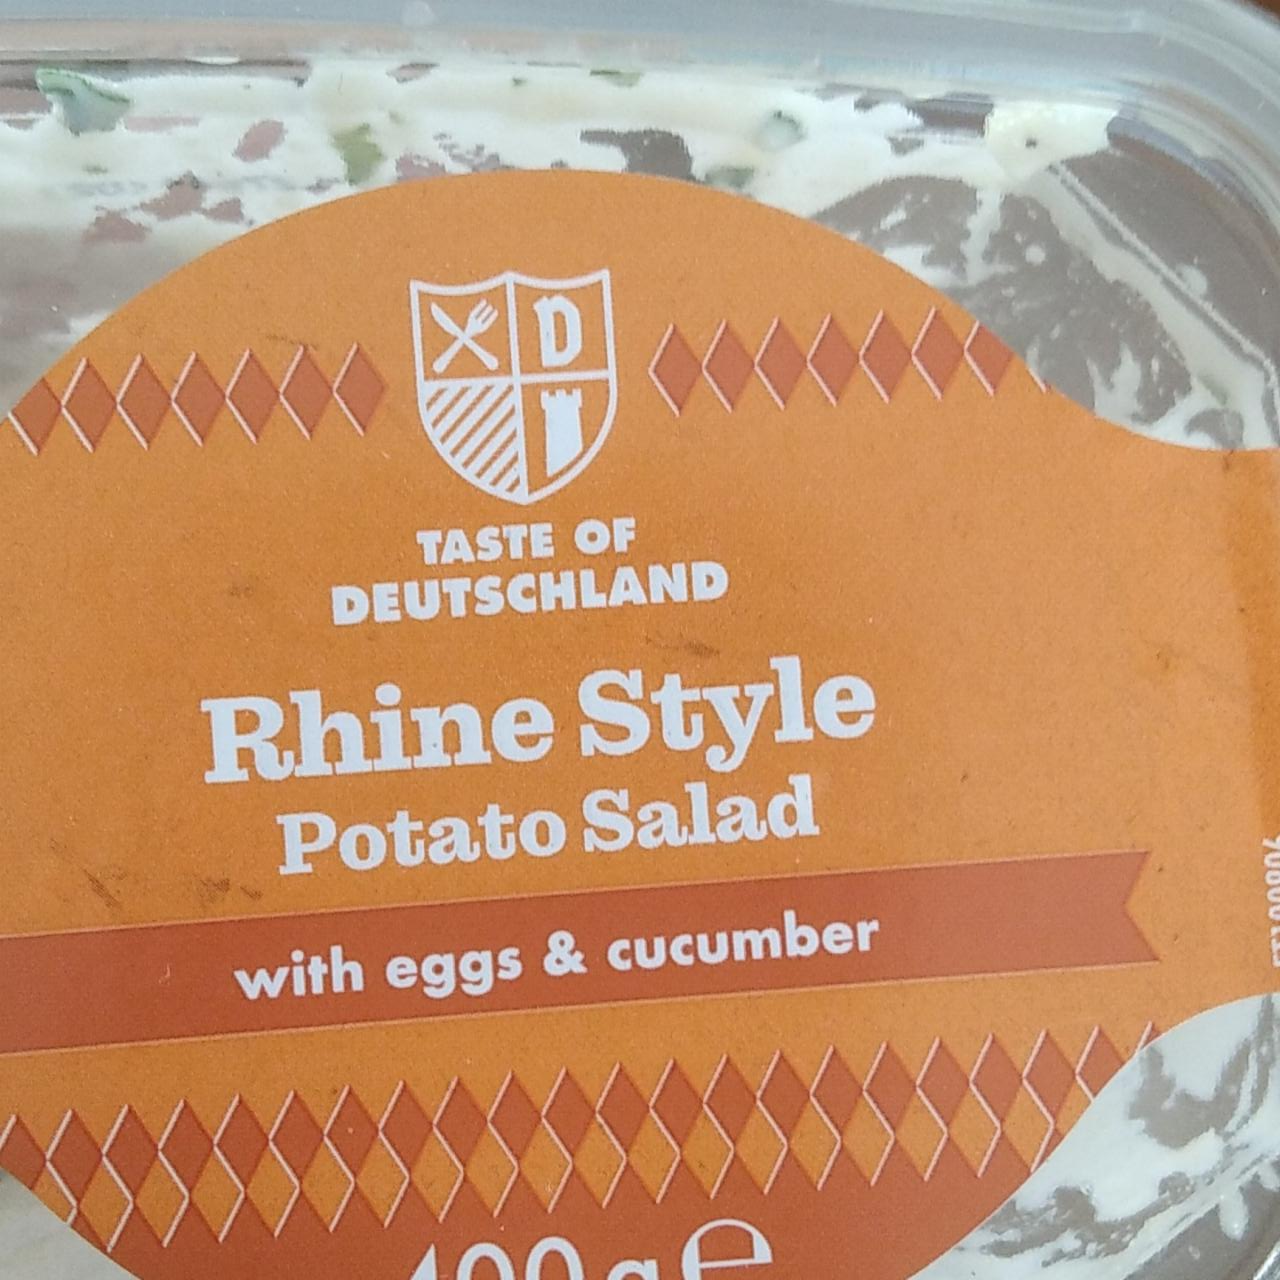 Fotografie - Rhine Style Potato Salad with eggs & cucumber Taste of Deutschland